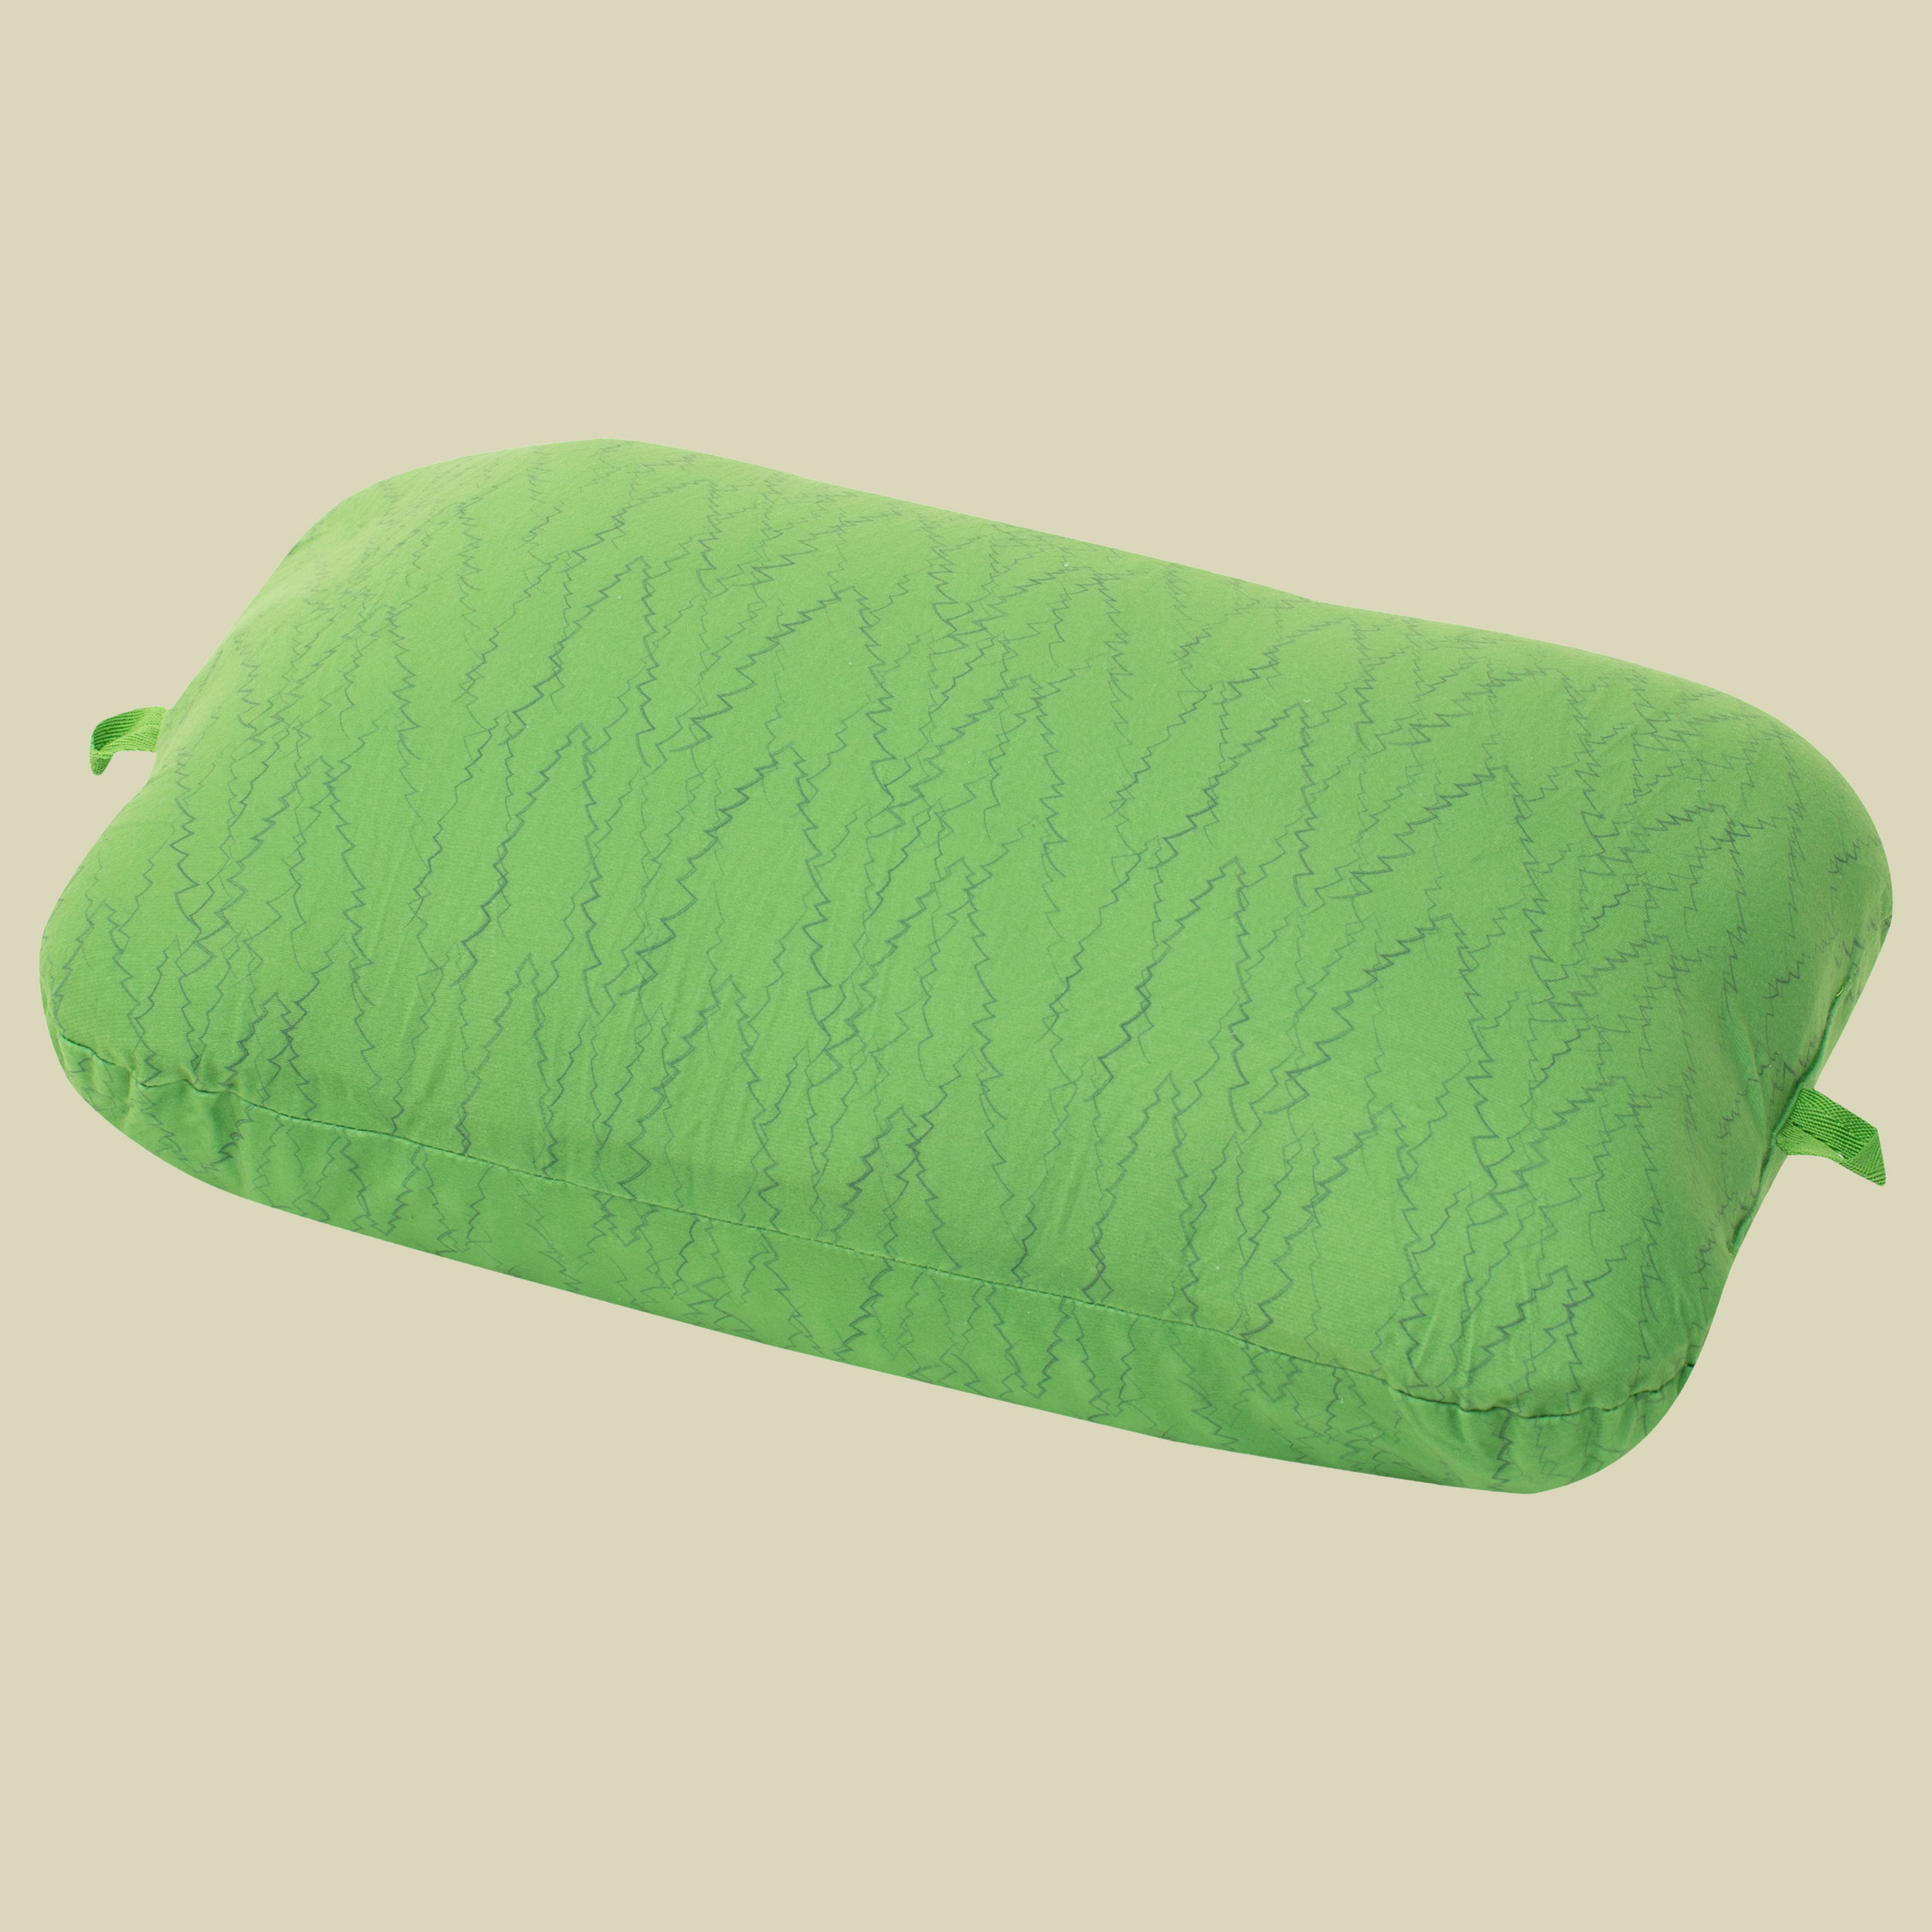 Trailhead Pillow Größe one size Farbe lichen forest